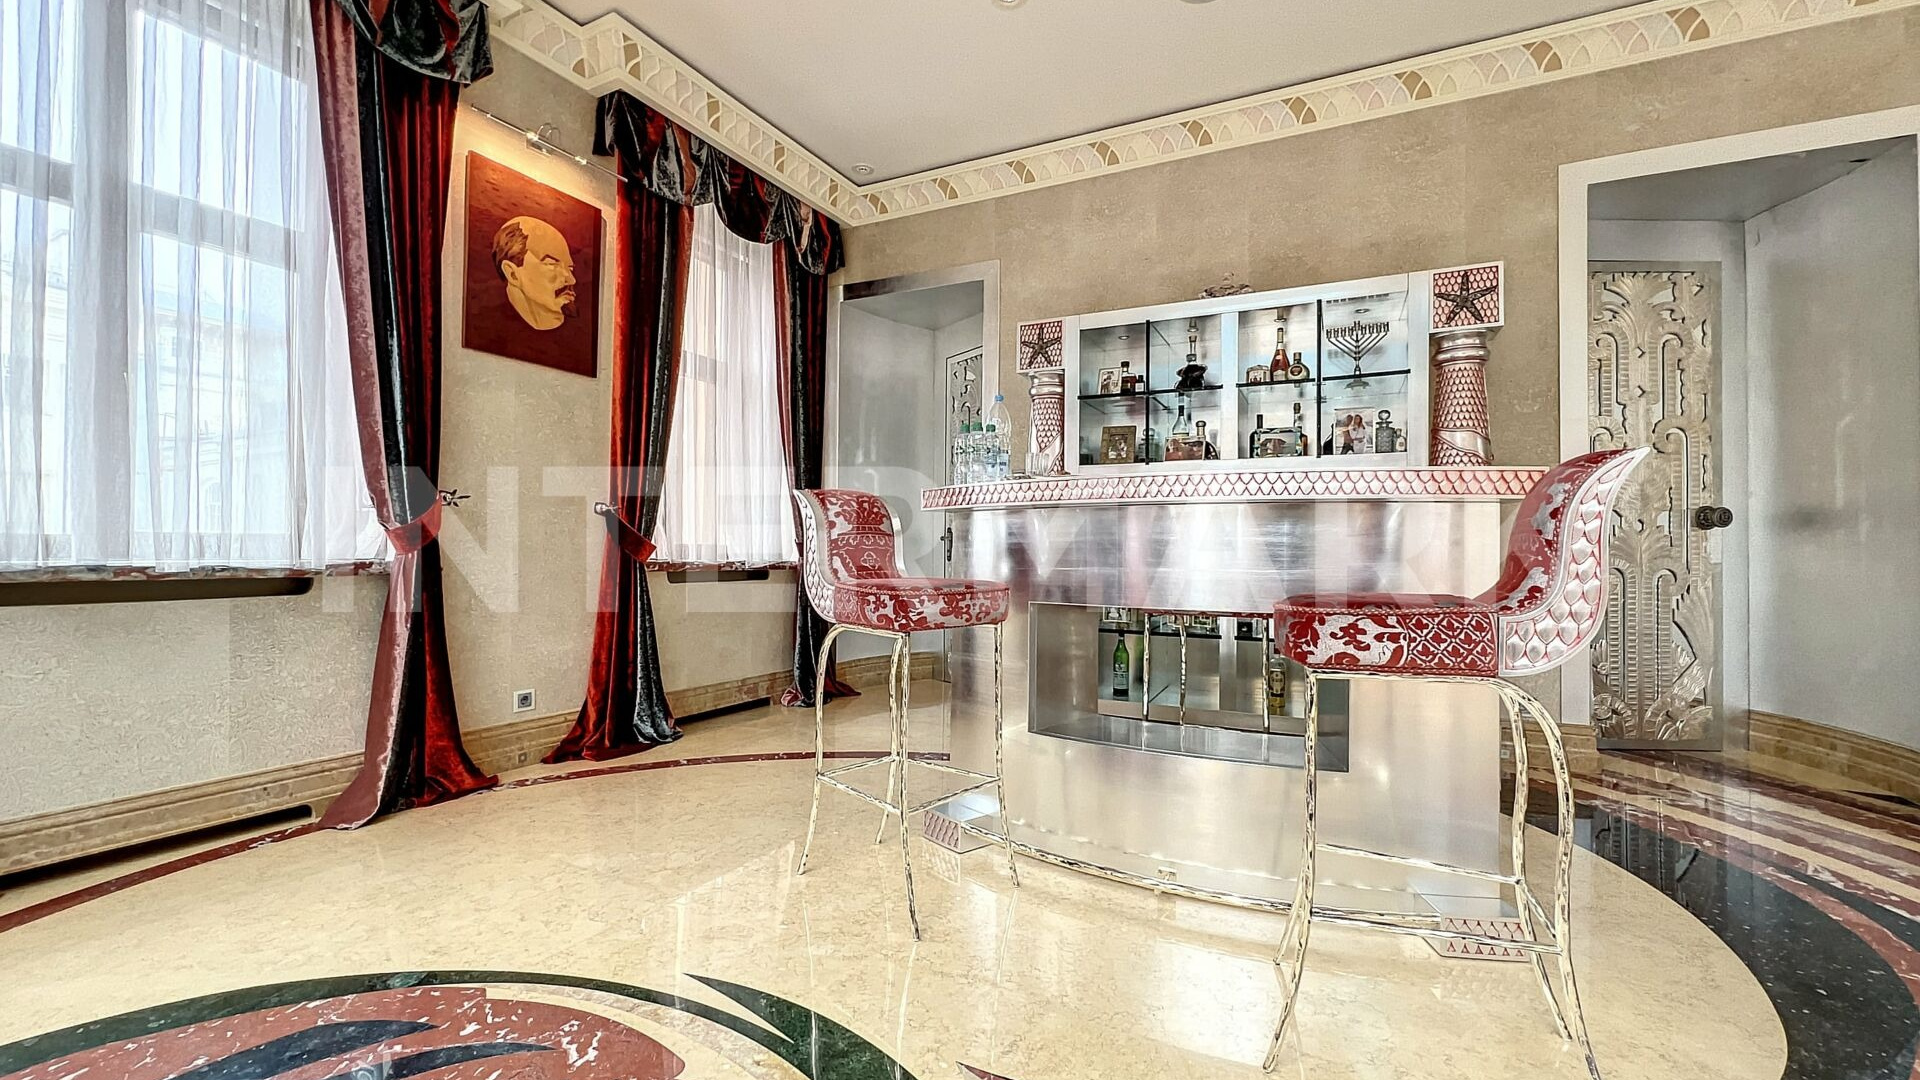 С портретом Ленина и кучей каминов. Как выглядит самая дорогая квартира в дореволюционном доме Москвы: фото